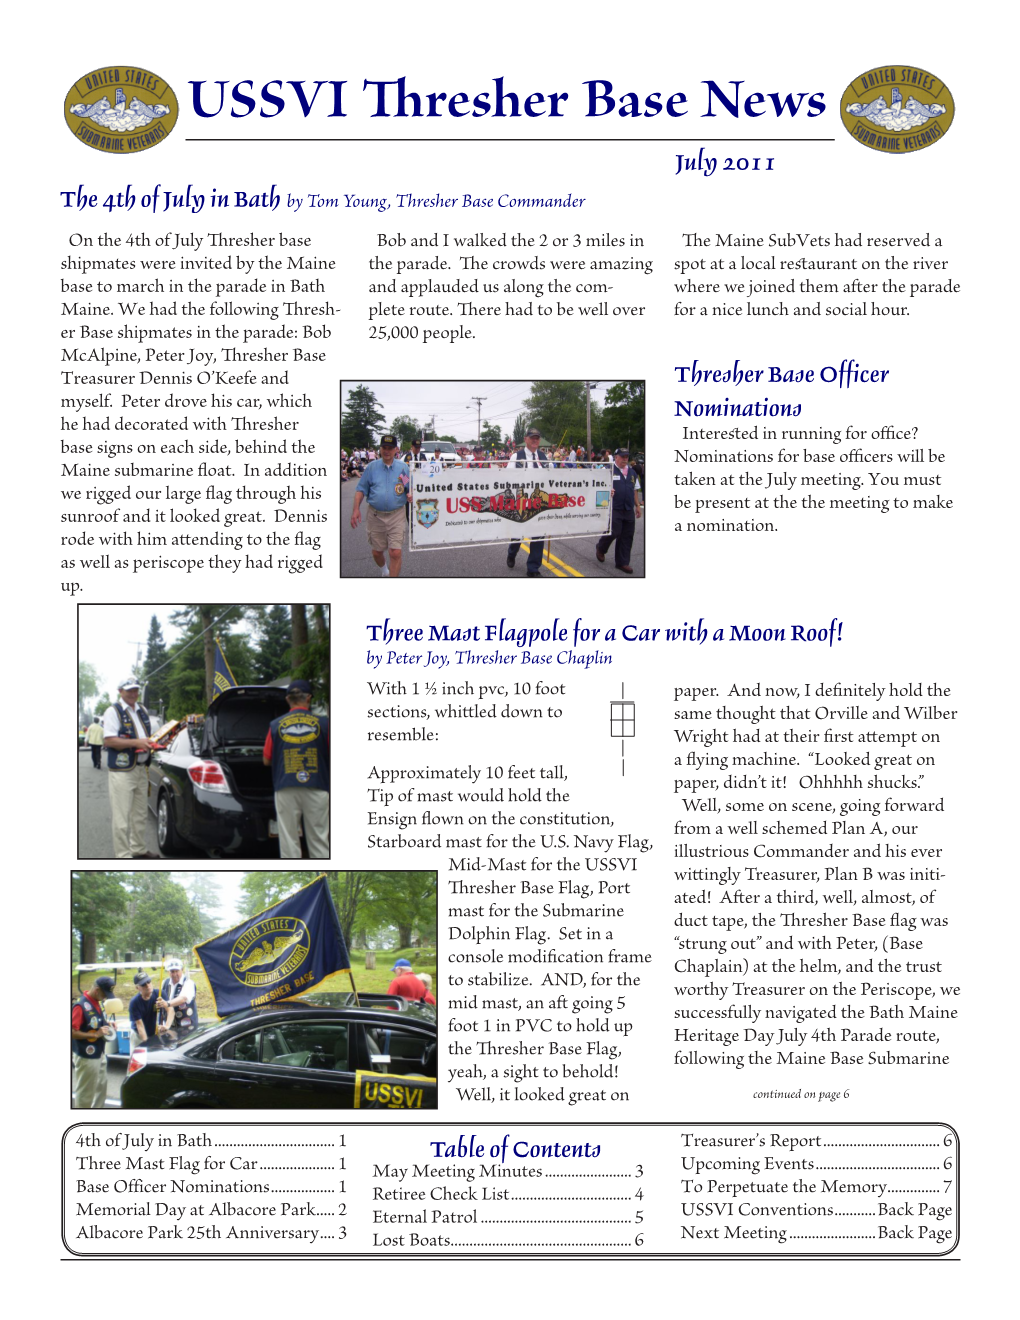 USSVI Thresher Base News July 2011